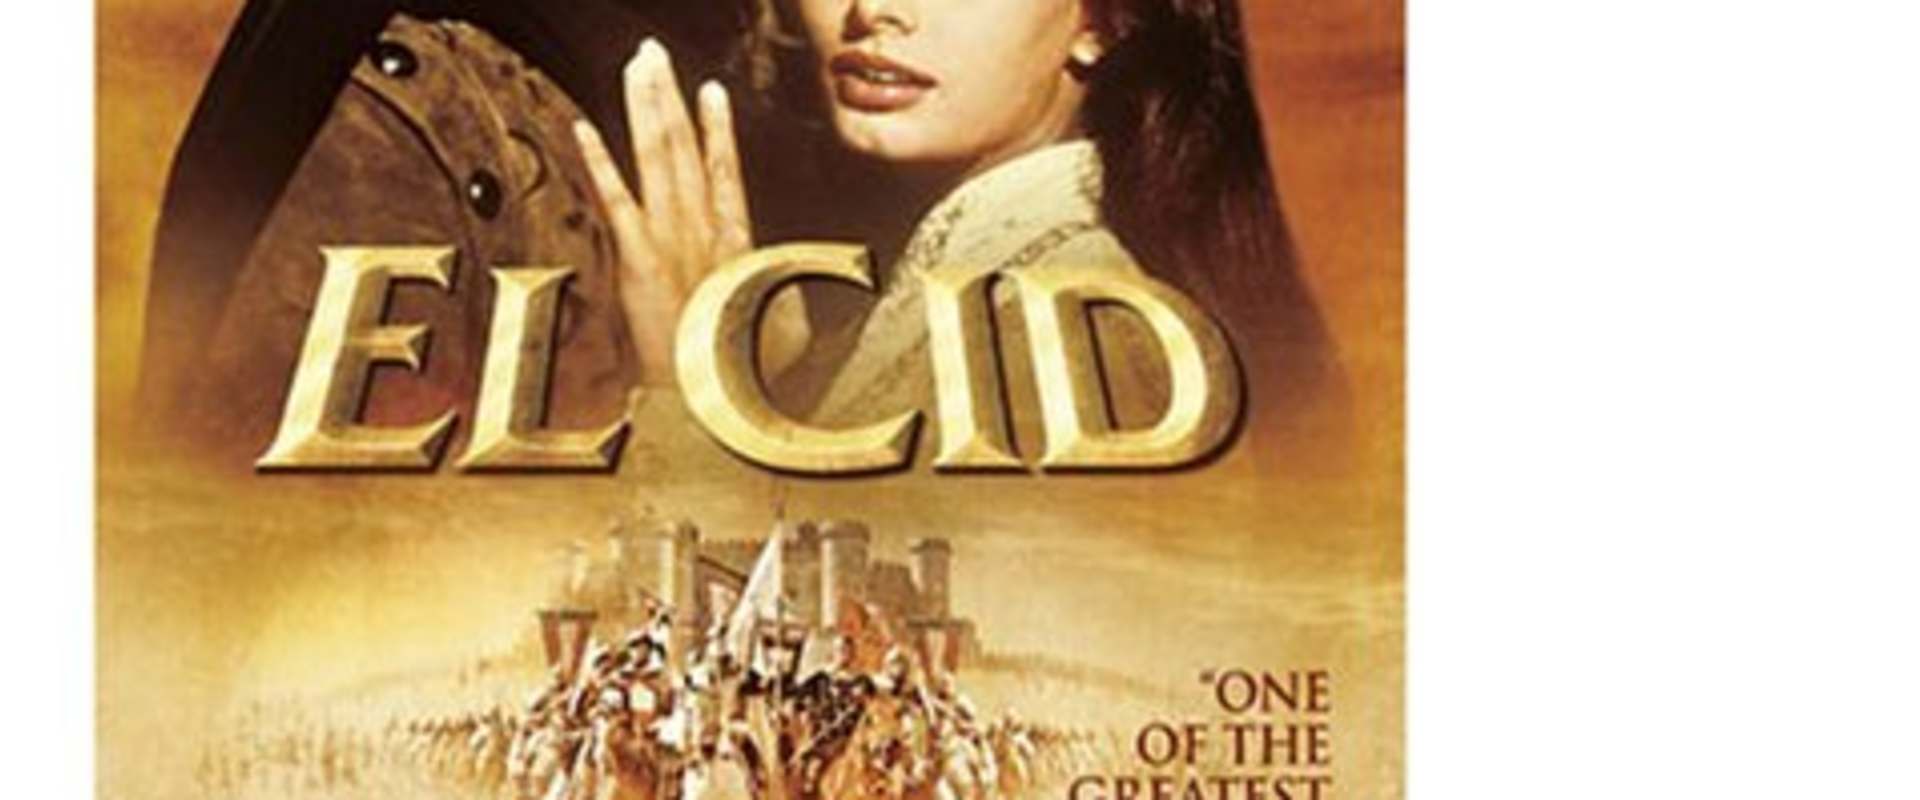 El Cid background 2